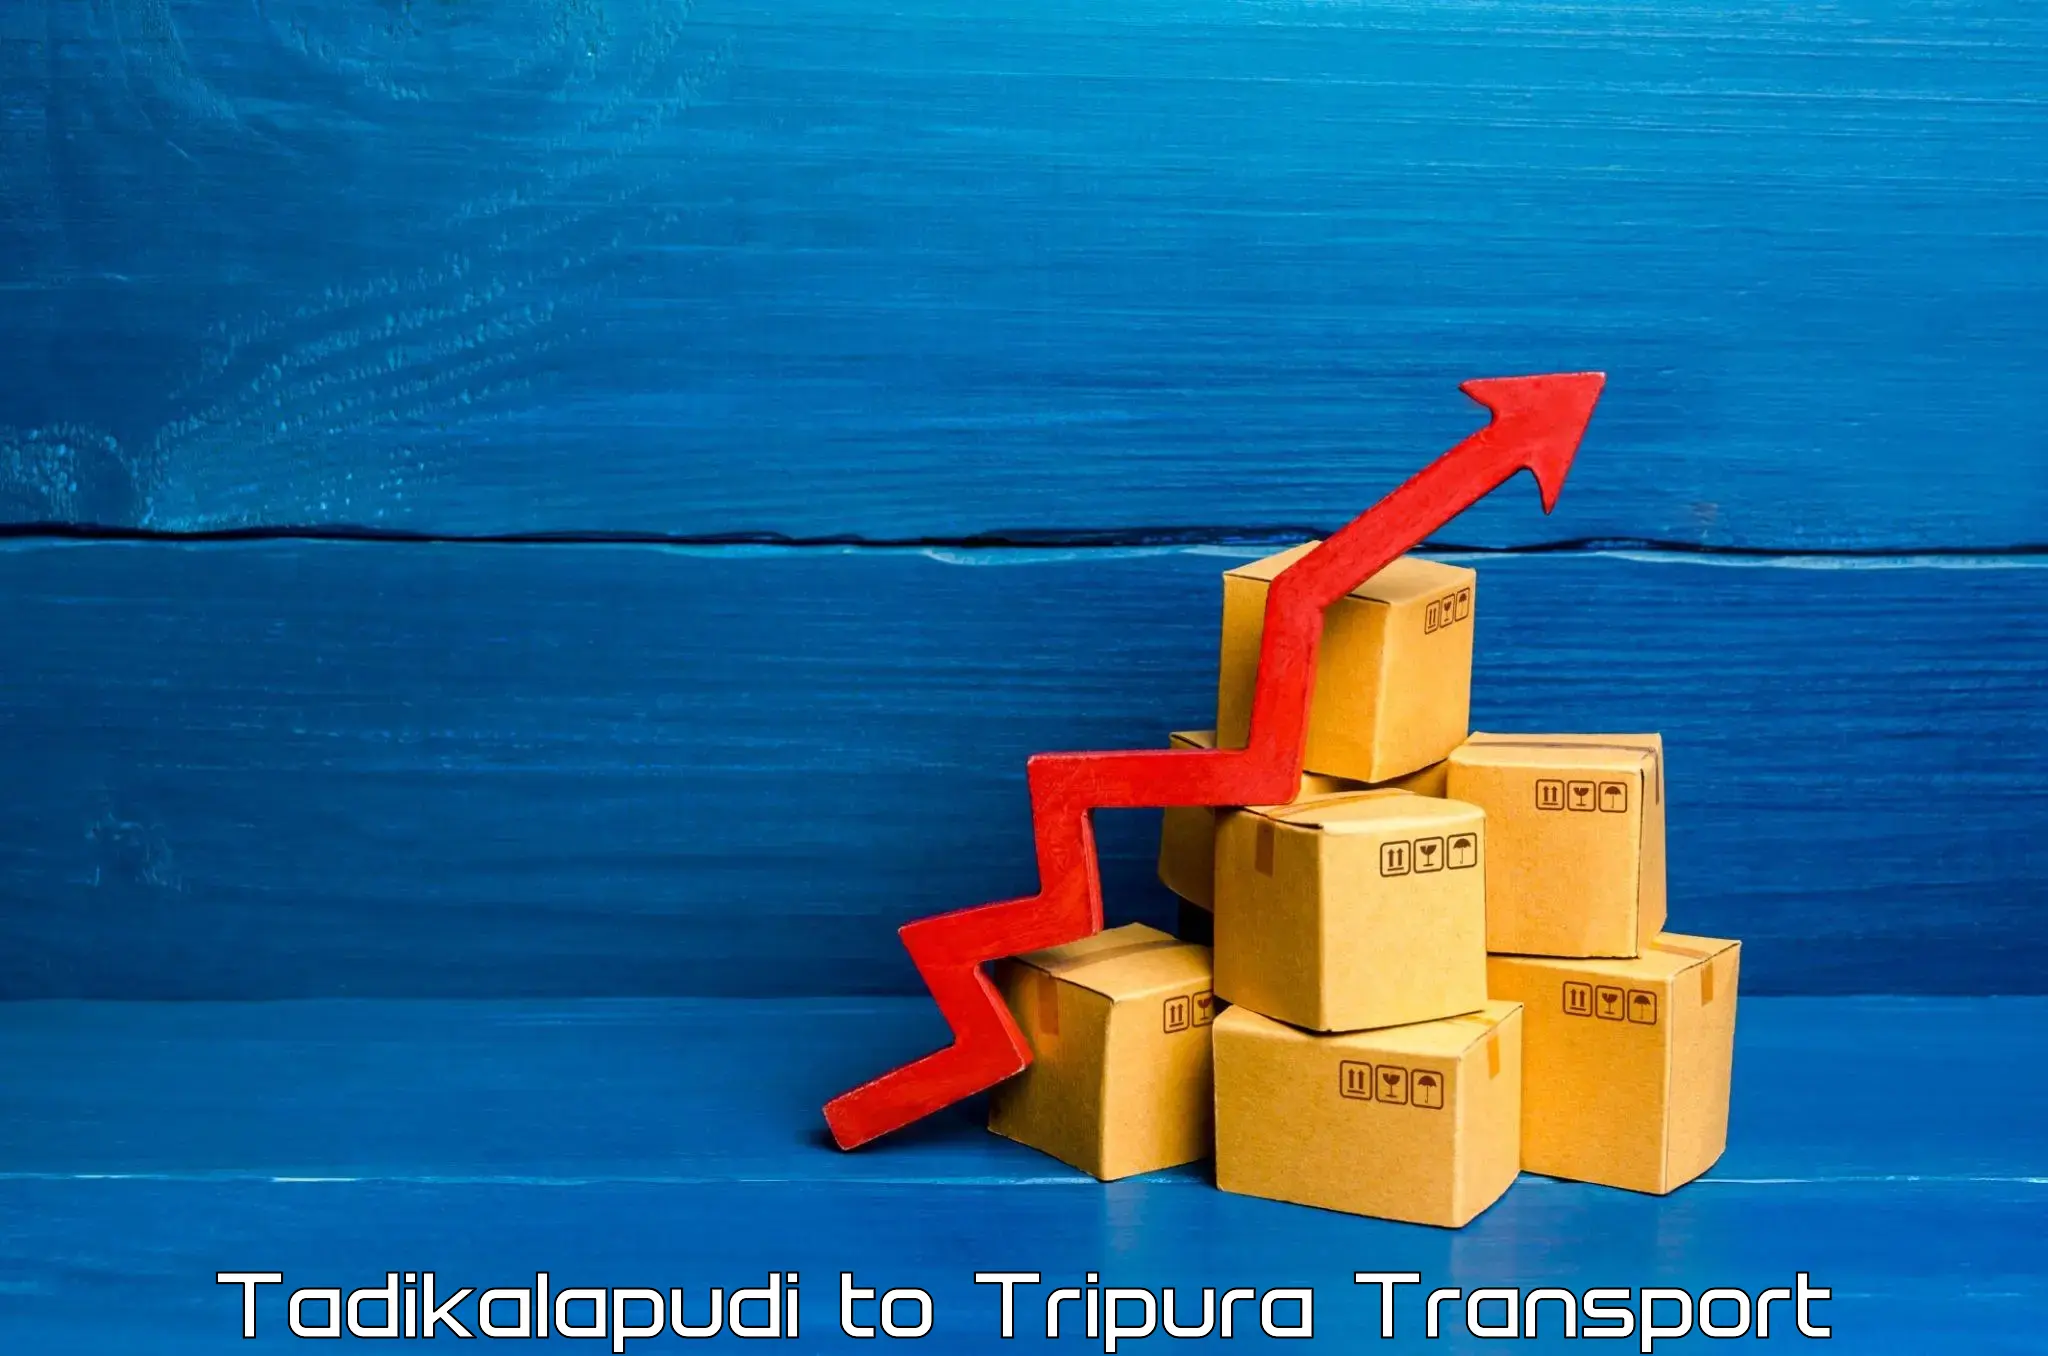 Furniture transport service Tadikalapudi to South Tripura